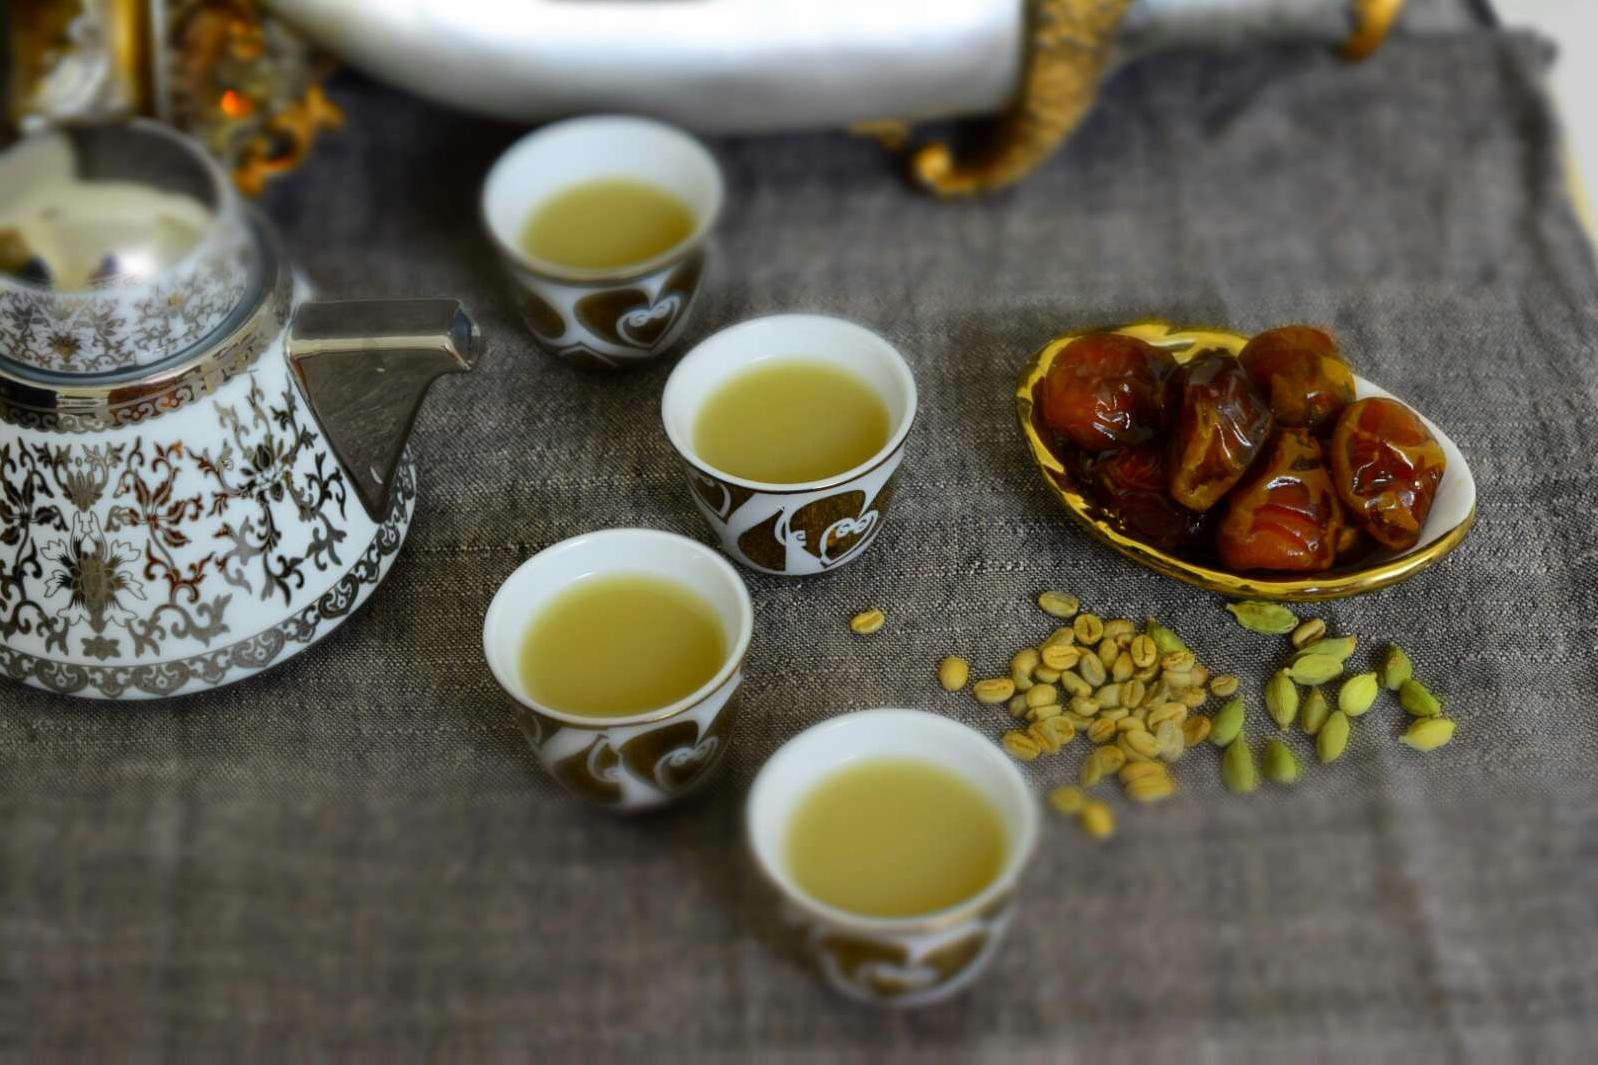 Delicious Arabic Coffee Recipe for True Coffee Lovers!